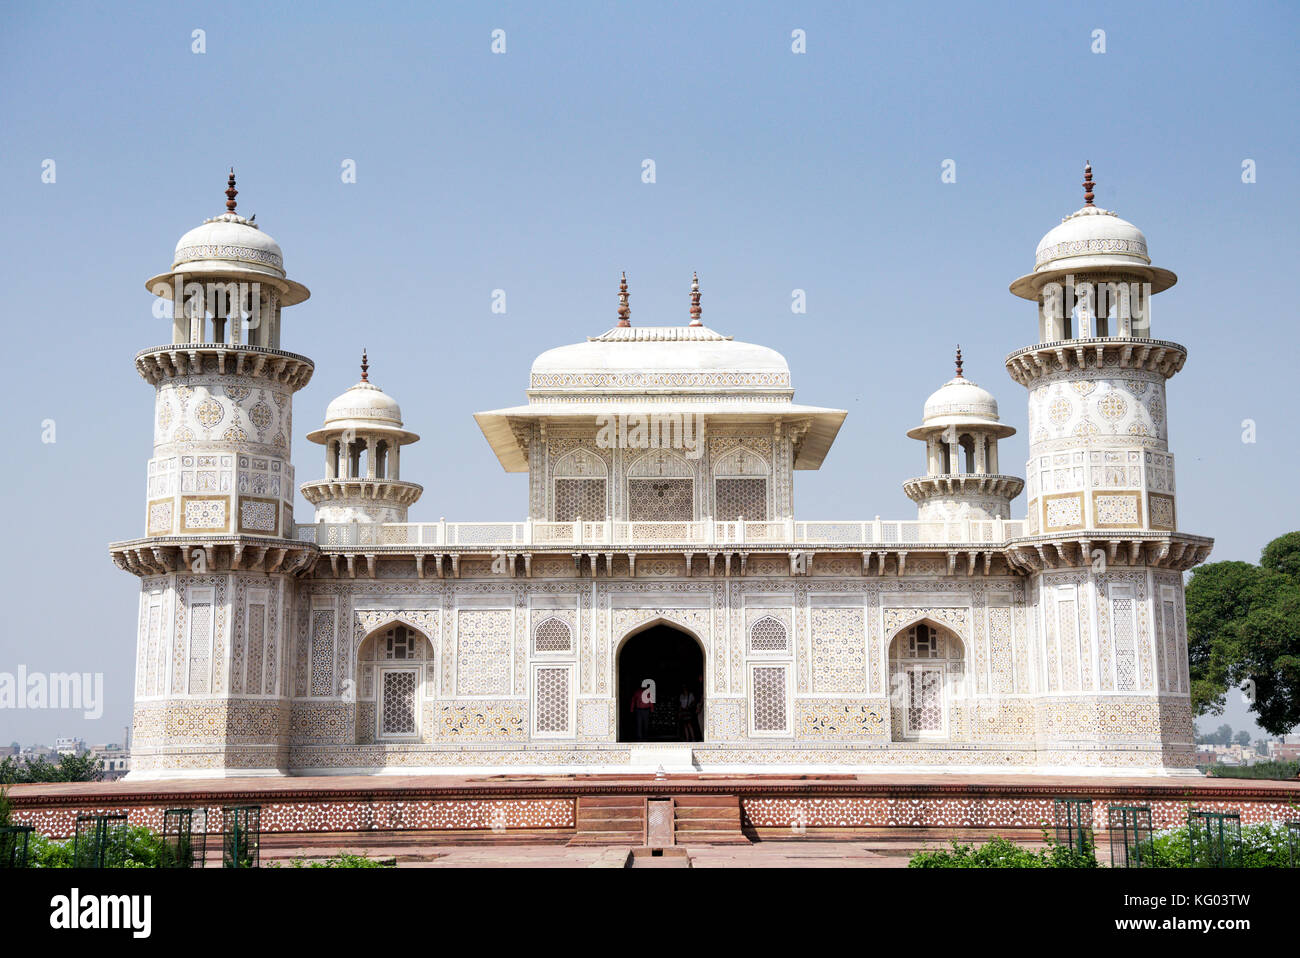 Tomba di Itimad-ud-Daulah. Mirza Ghiyas Beg era un funzionario di imperatori Mughal Akbar e Jahangir. Egli è stato conferito il titolo di Itimad-ud-Daulah. Foto Stock